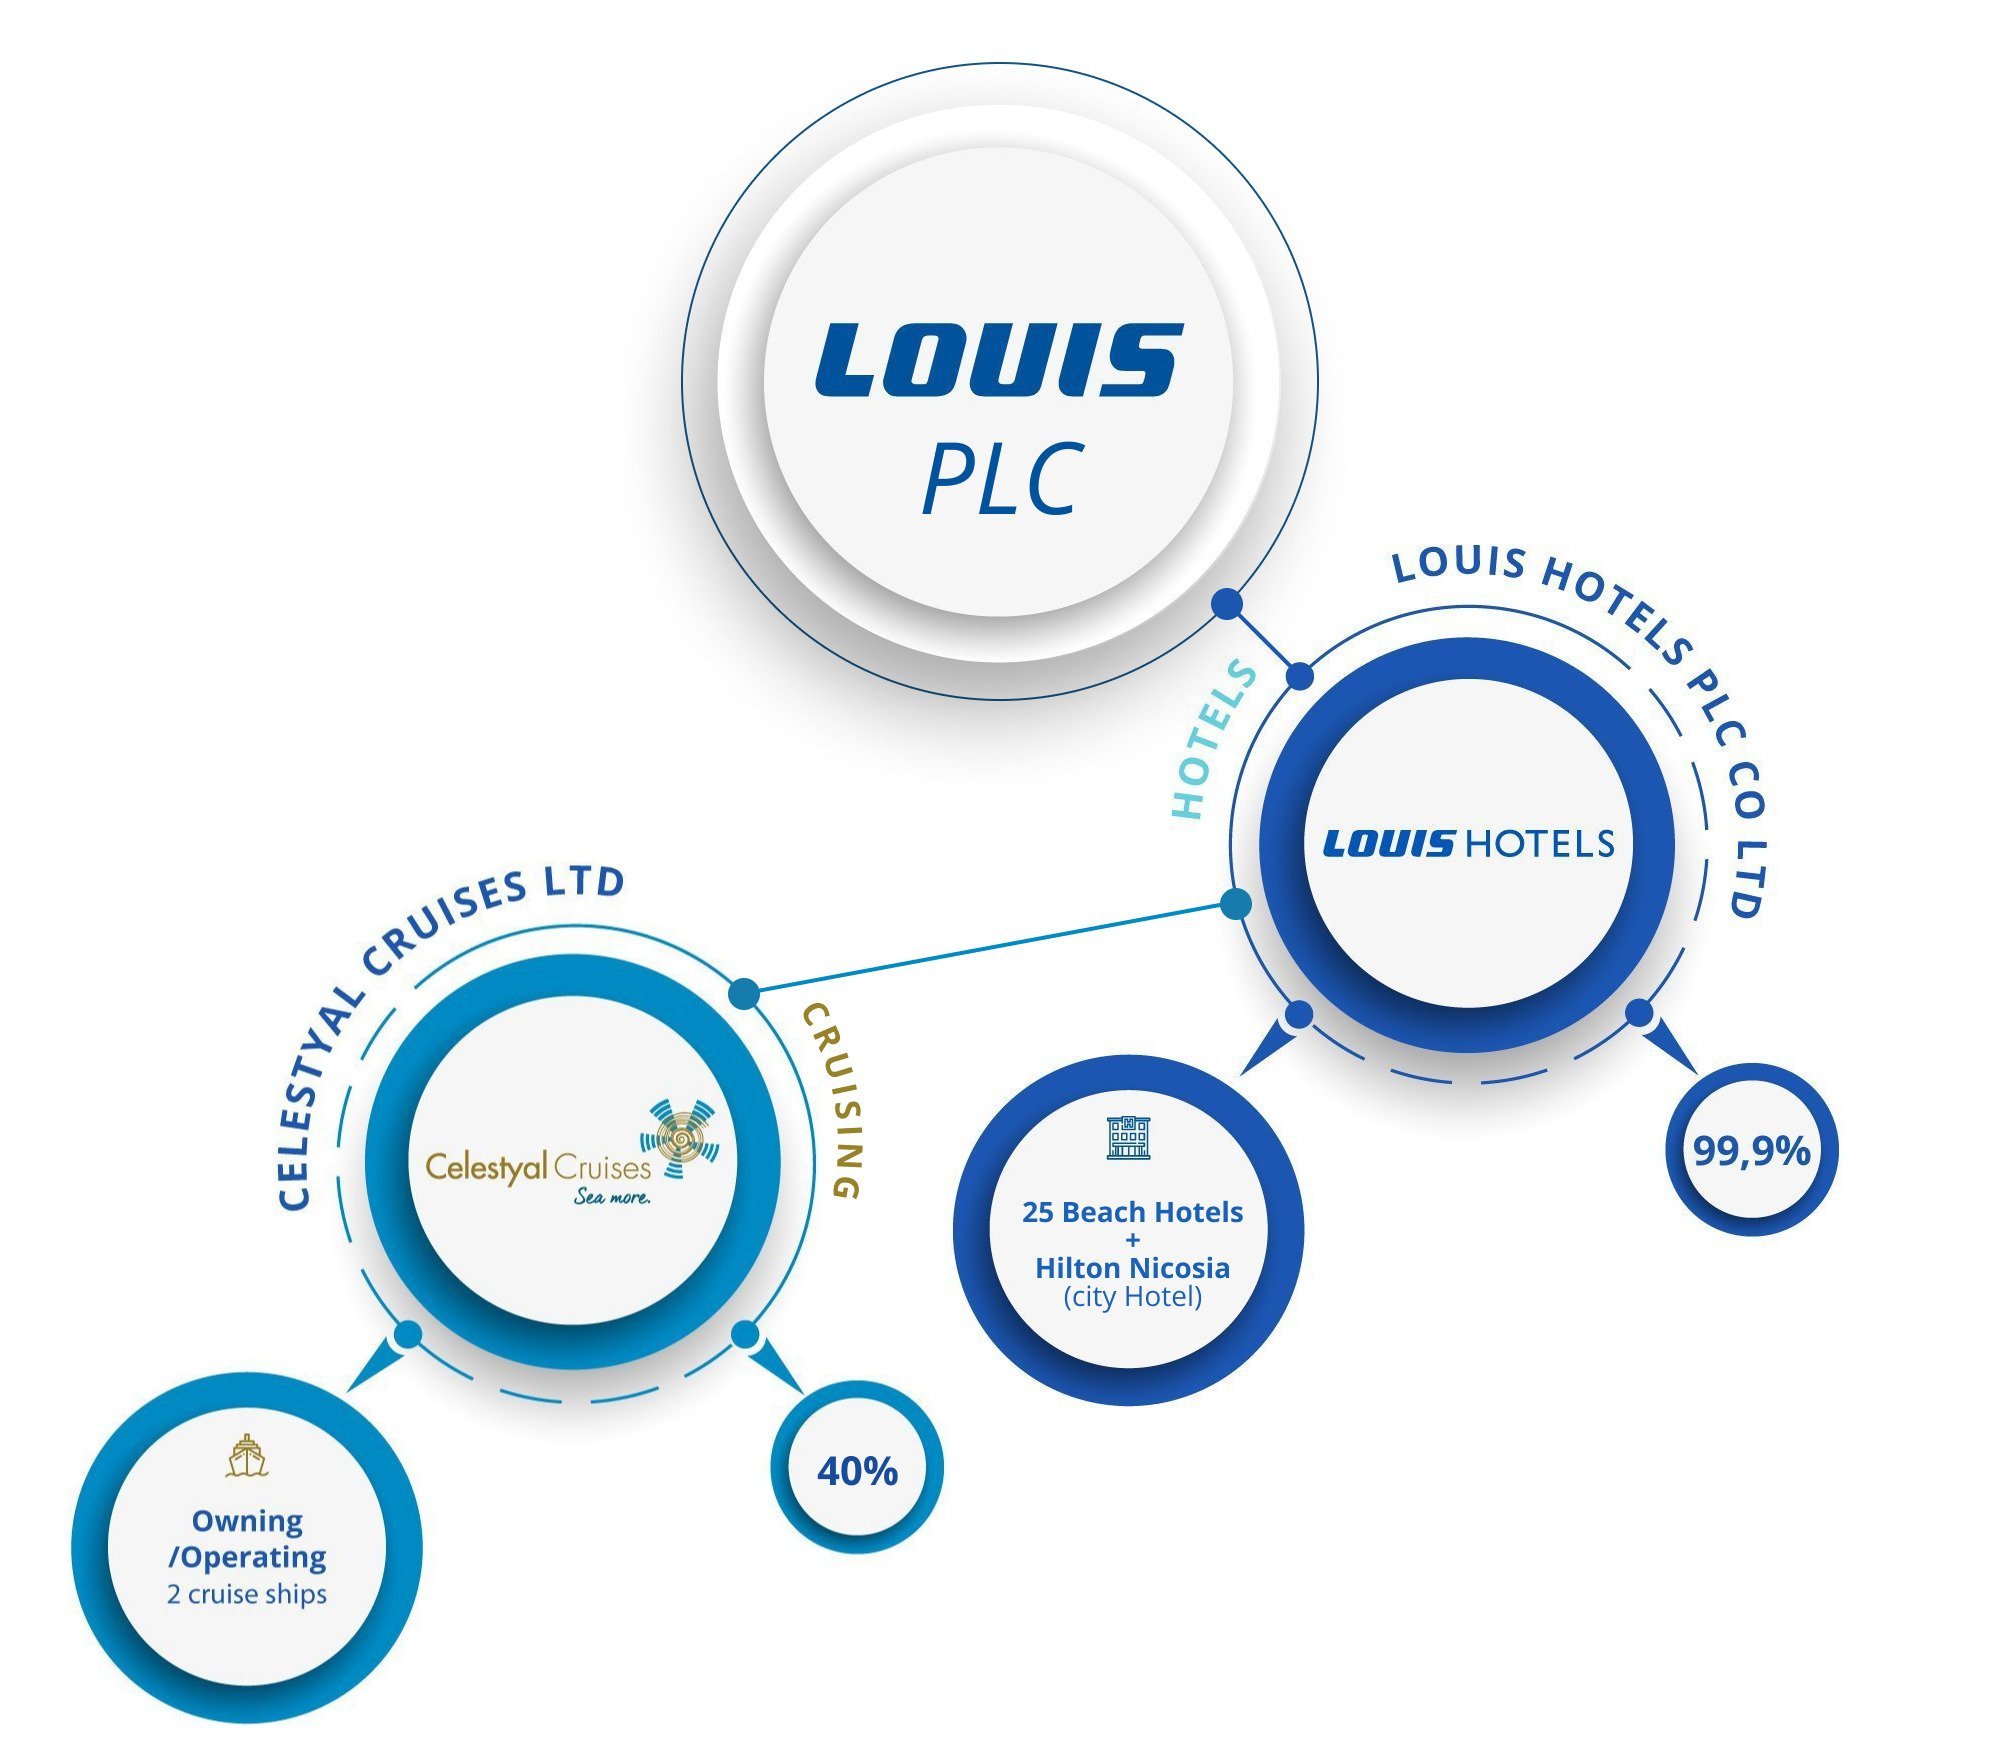 LOUIS_PLC_COMPANY_STRUCTURE